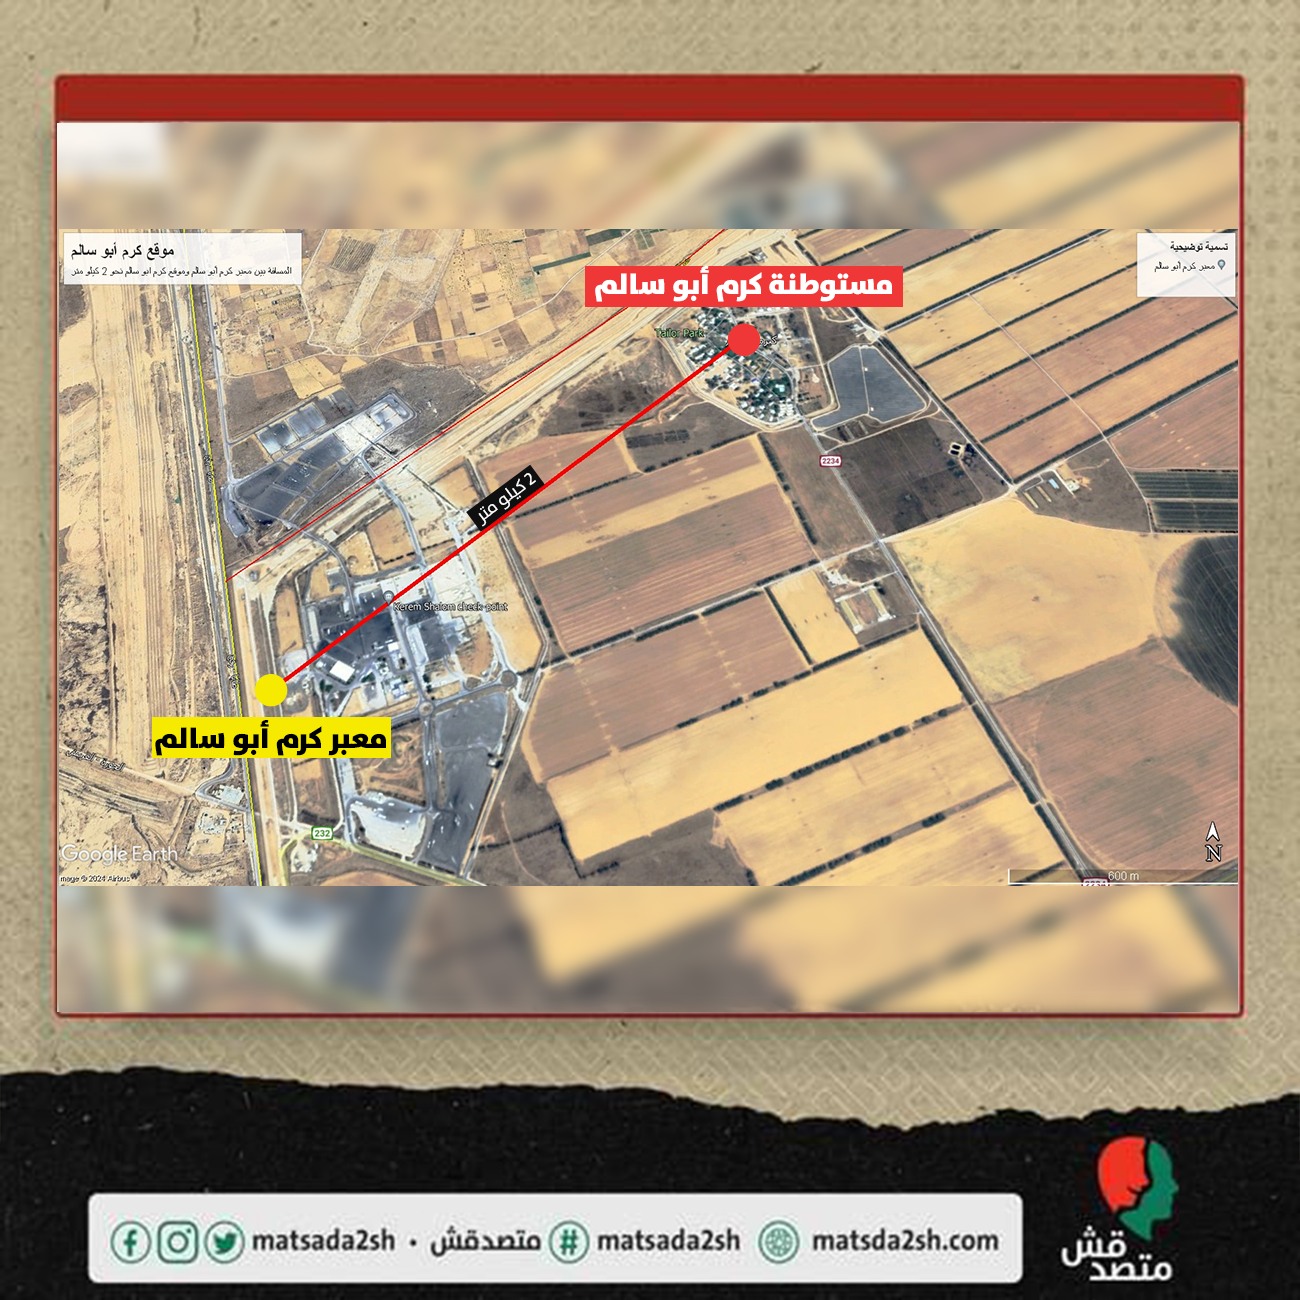 خريطة توضح المسافة بين معبر كرم أبوسالم و مستوطنة كرم أبوسالم والمسافة بينهما نحو 1.5 كيلومتر.